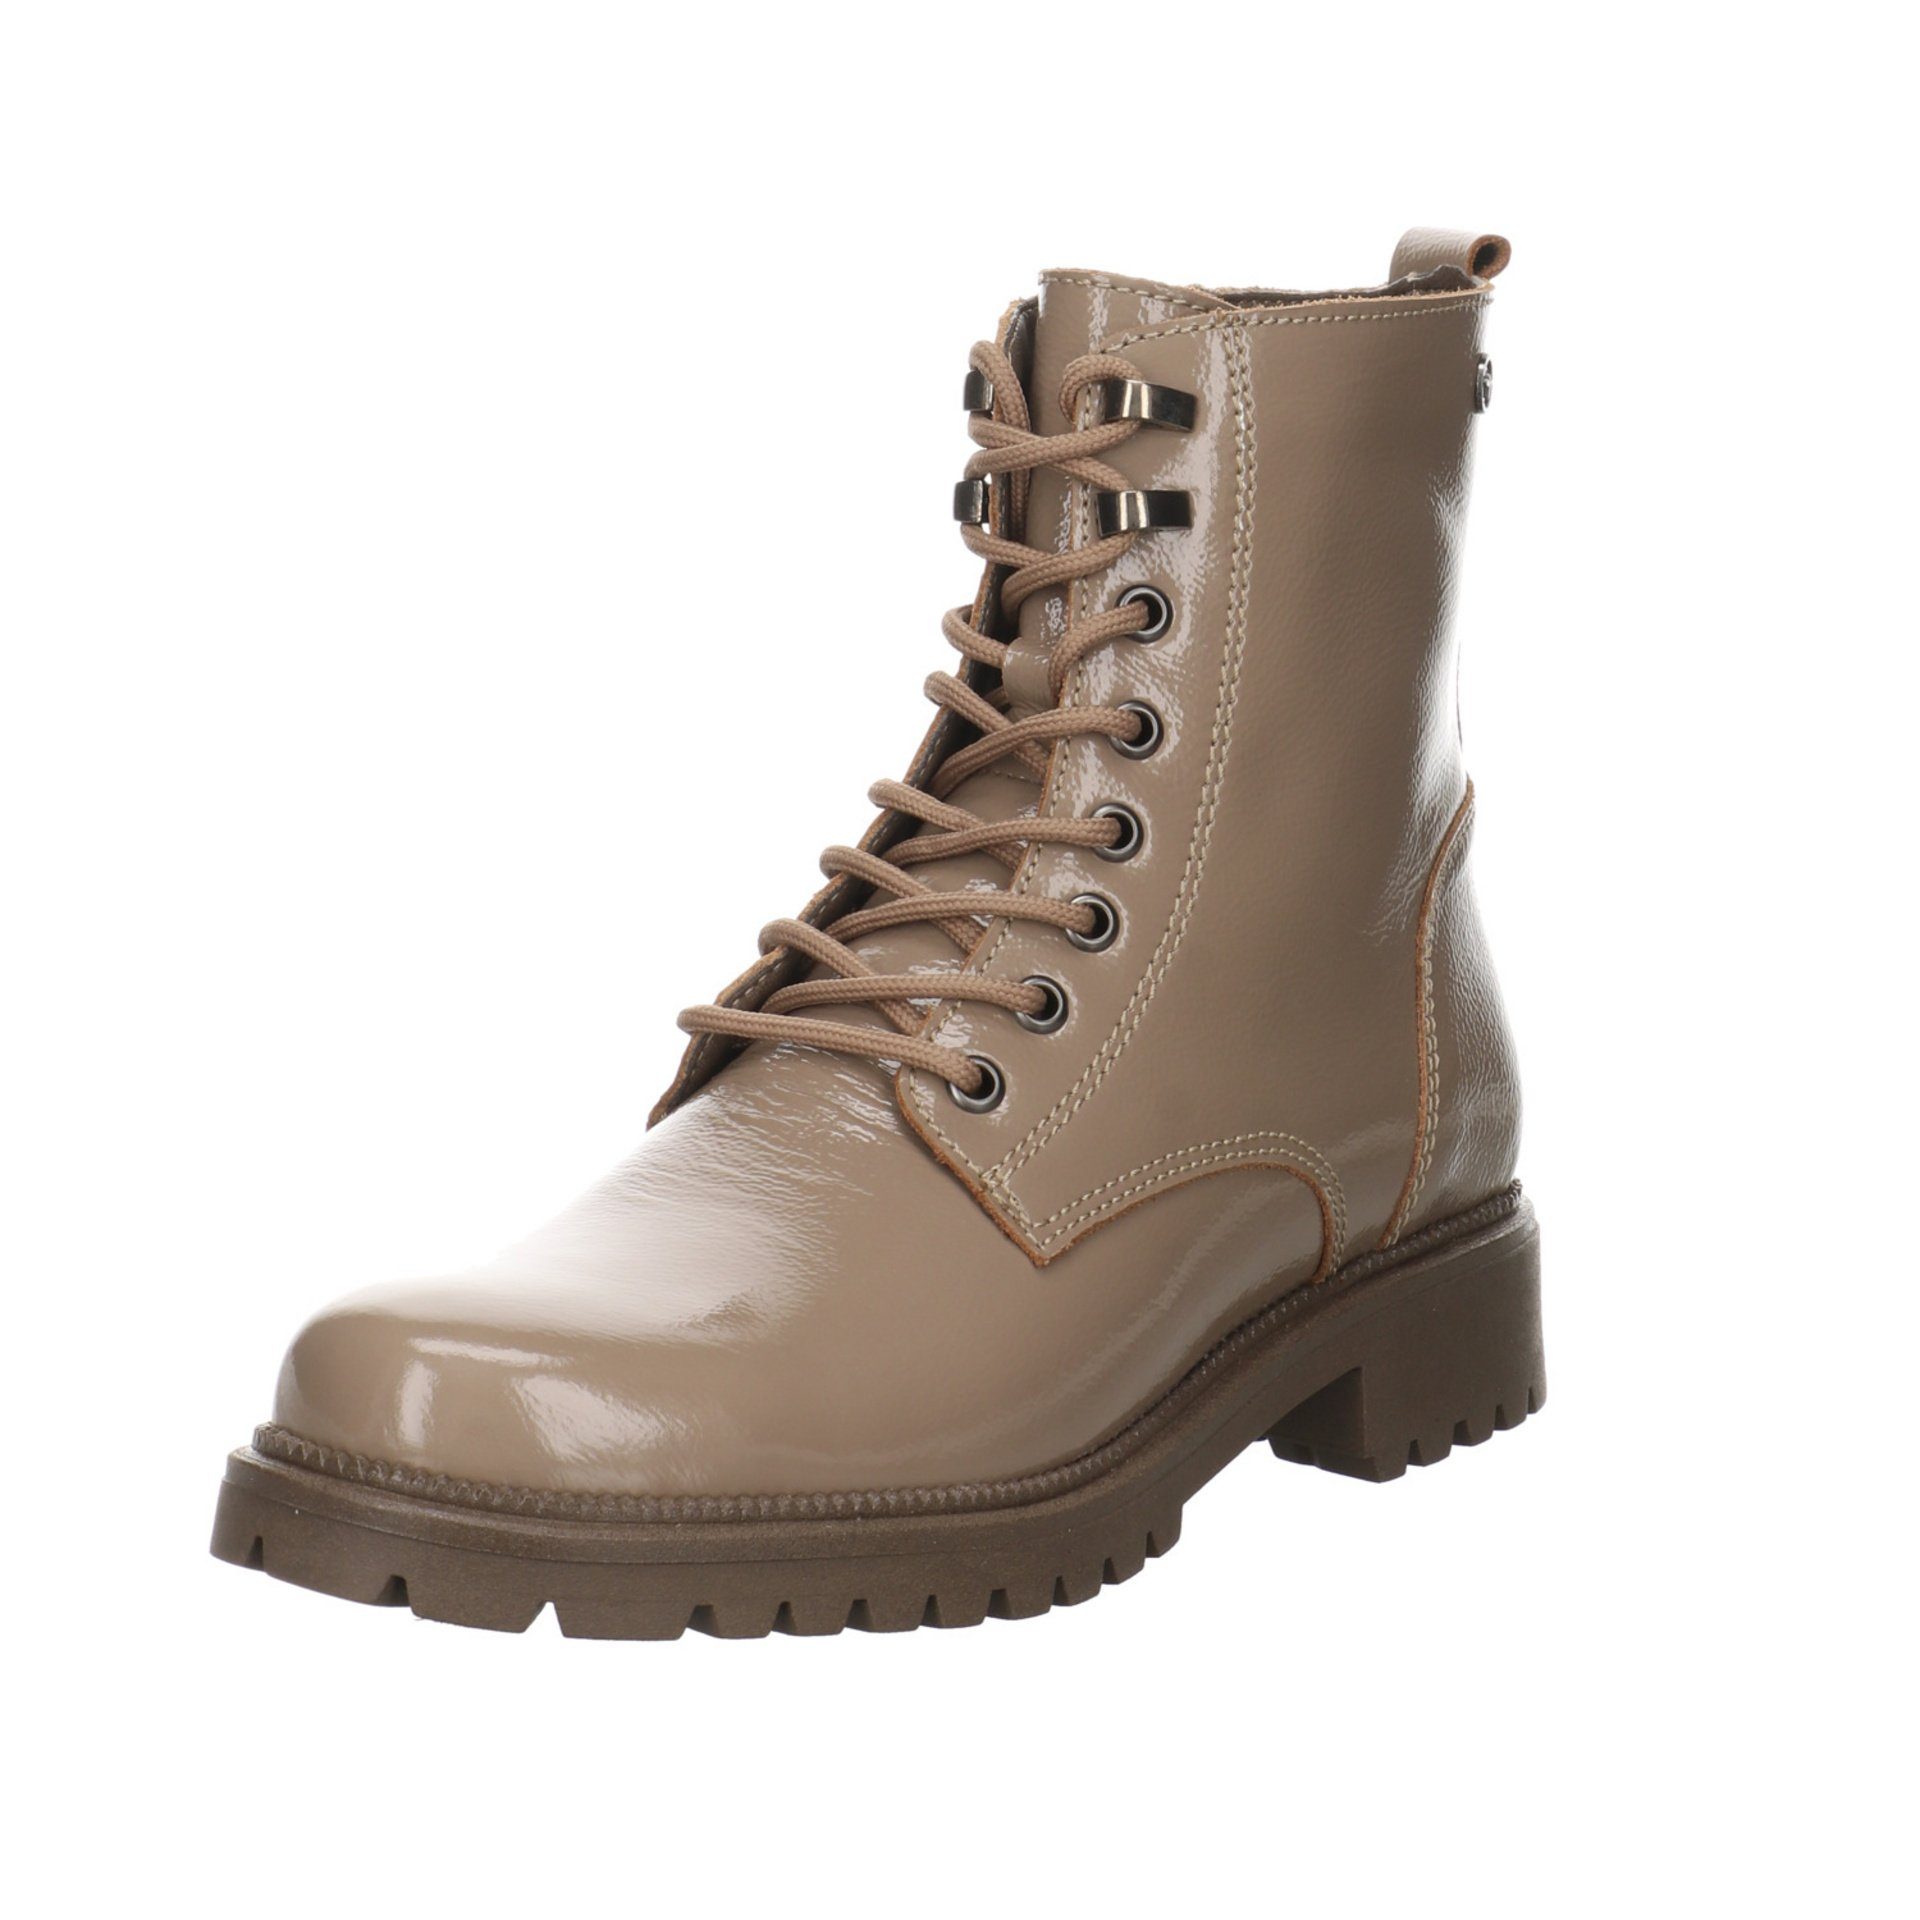 Tamaris »Damen Stiefeletten Schuhe Boots Elegant Freizeit«  Schnürstiefelette Lackleder online kaufen | OTTO